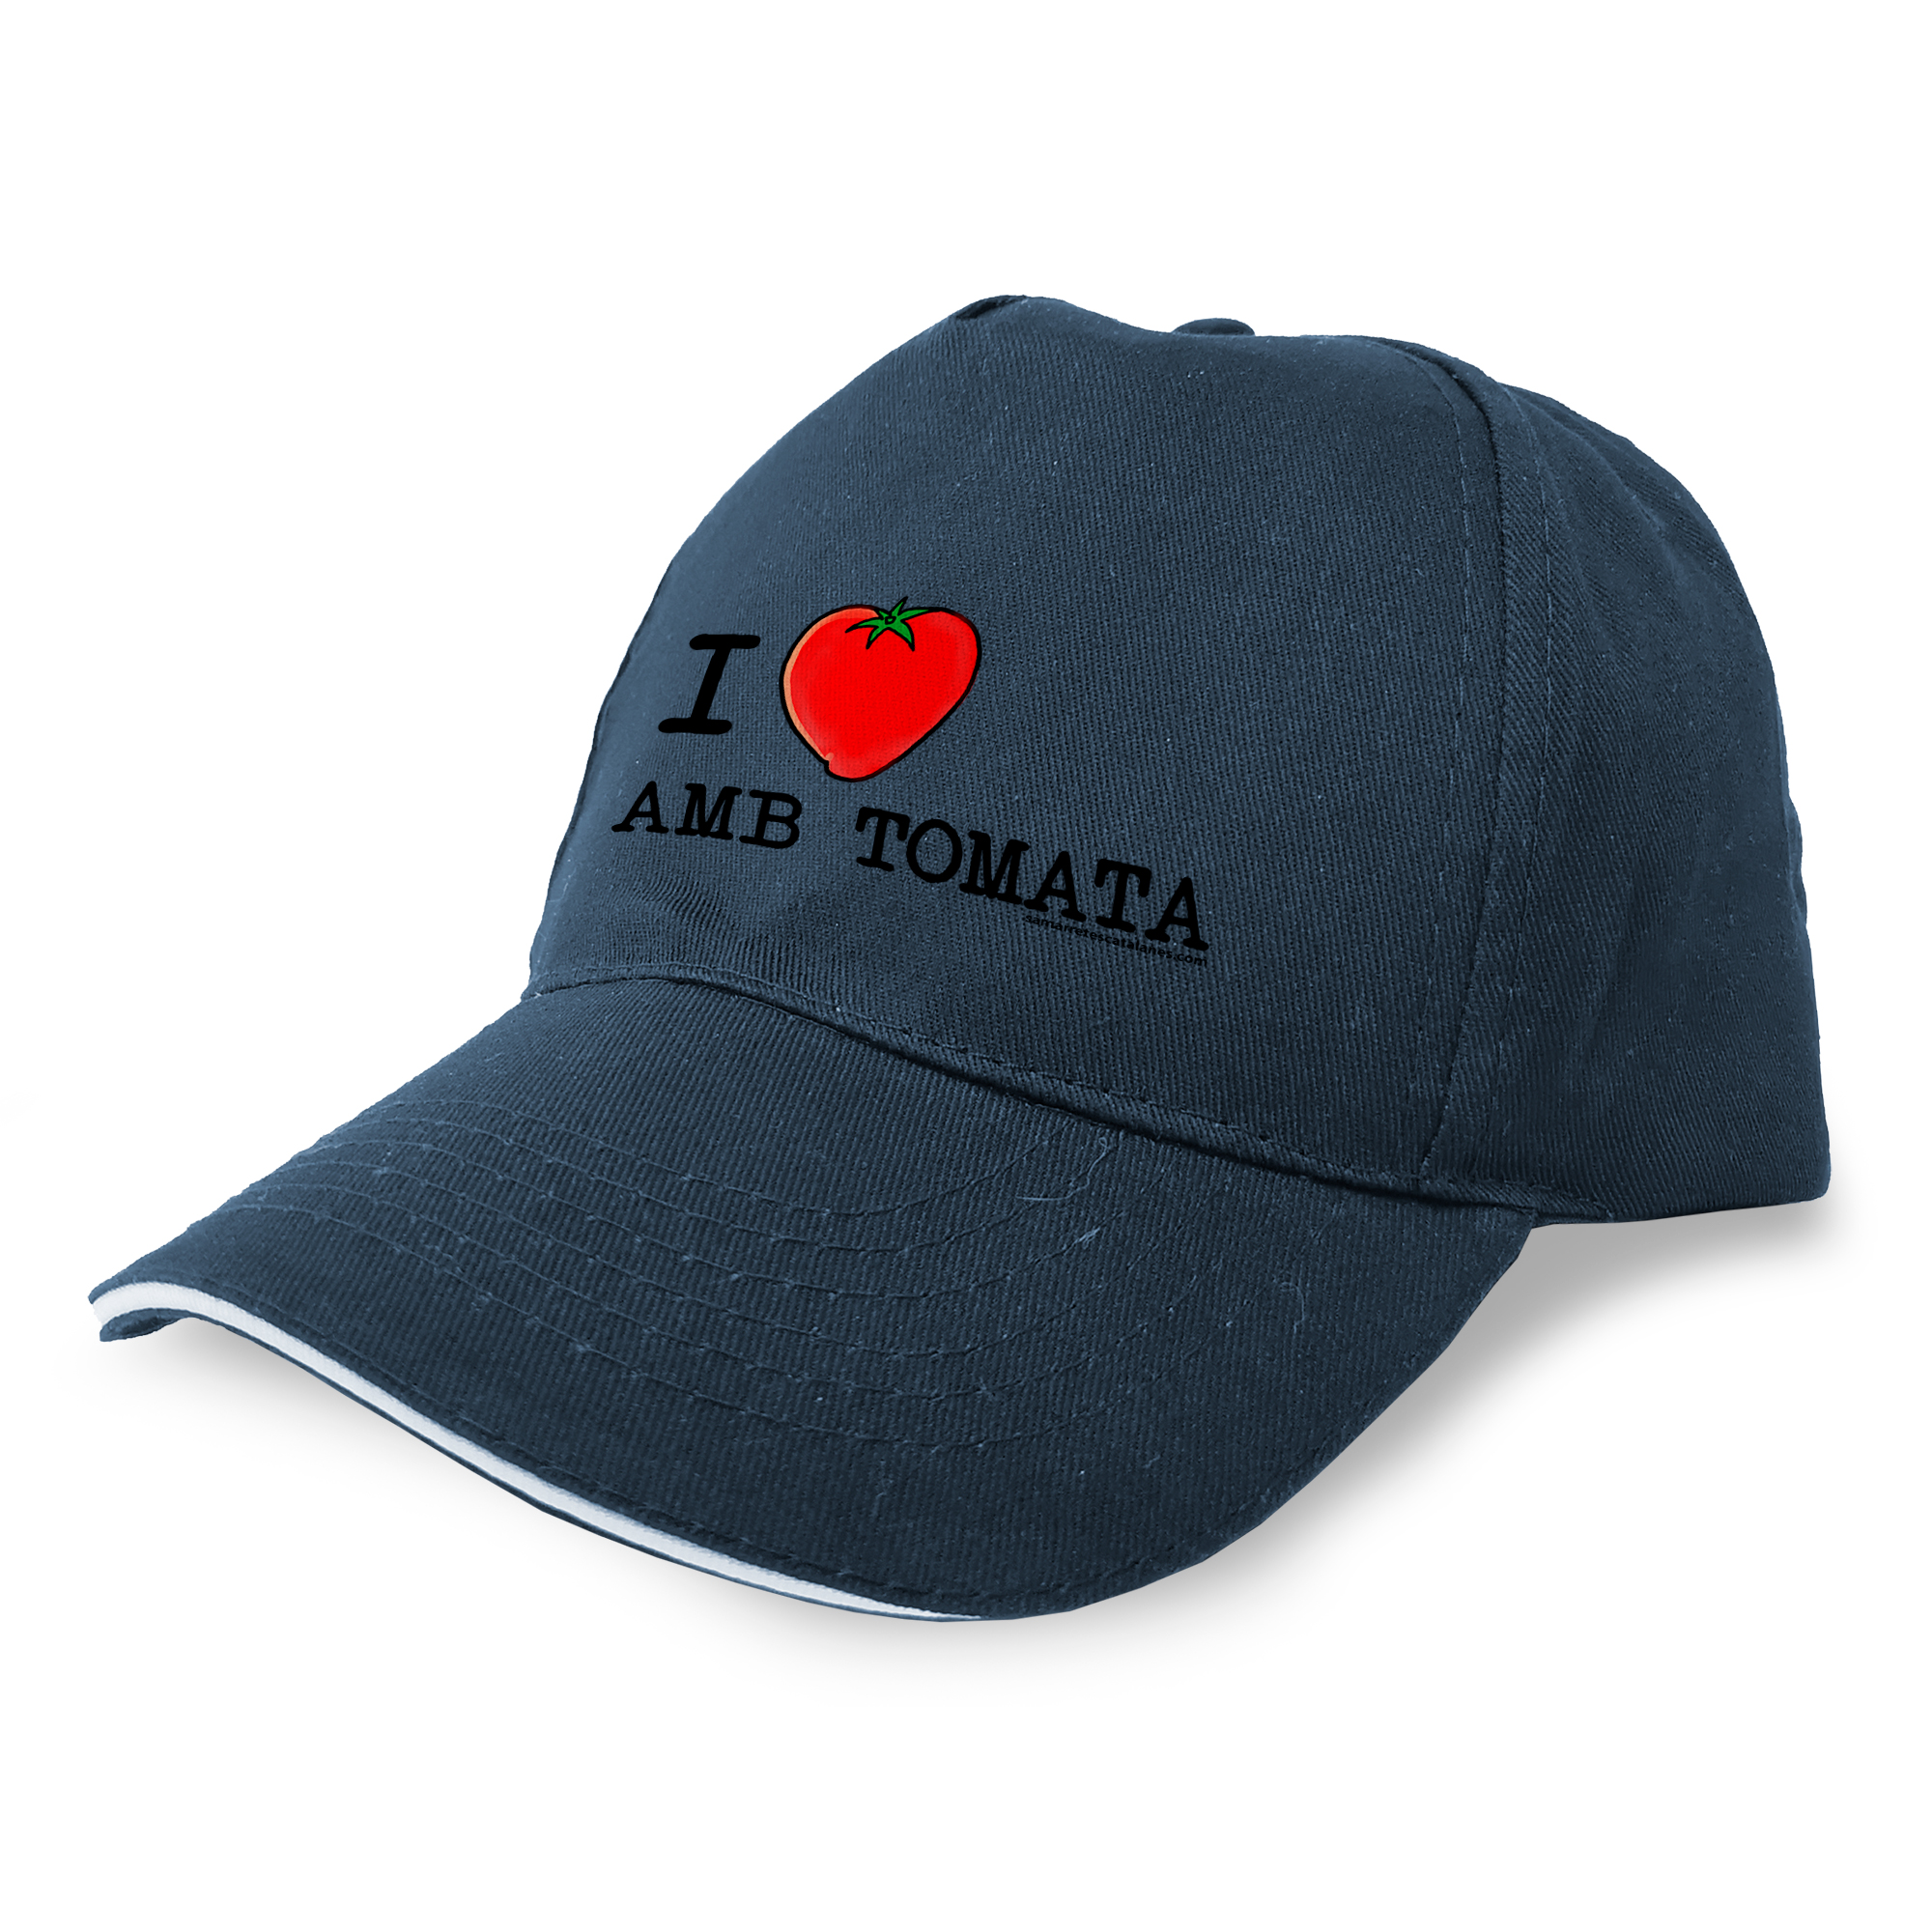 Kap Catalonie I Love Pa amb Tomata Unisex